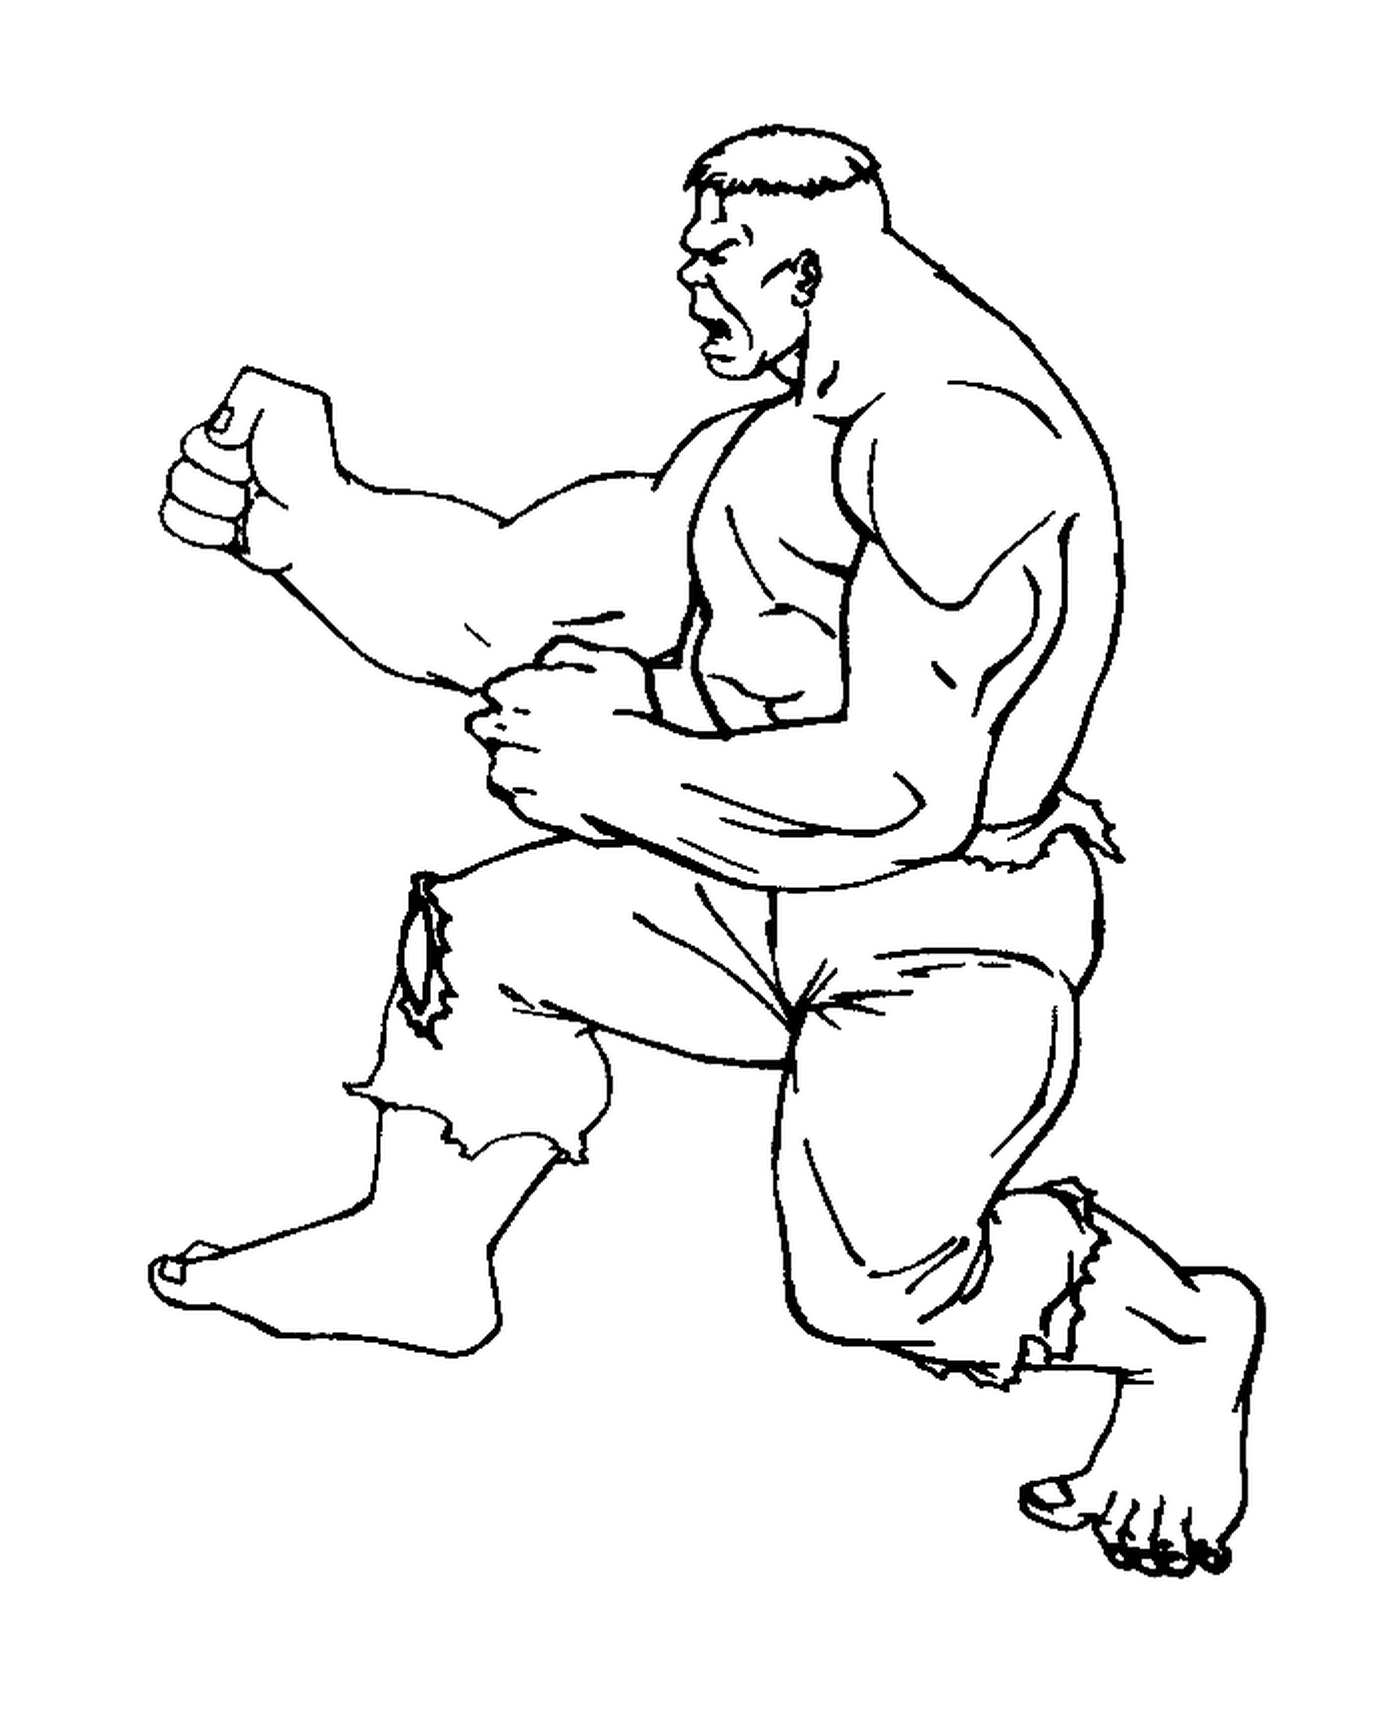   Hulk pratique le karaté 